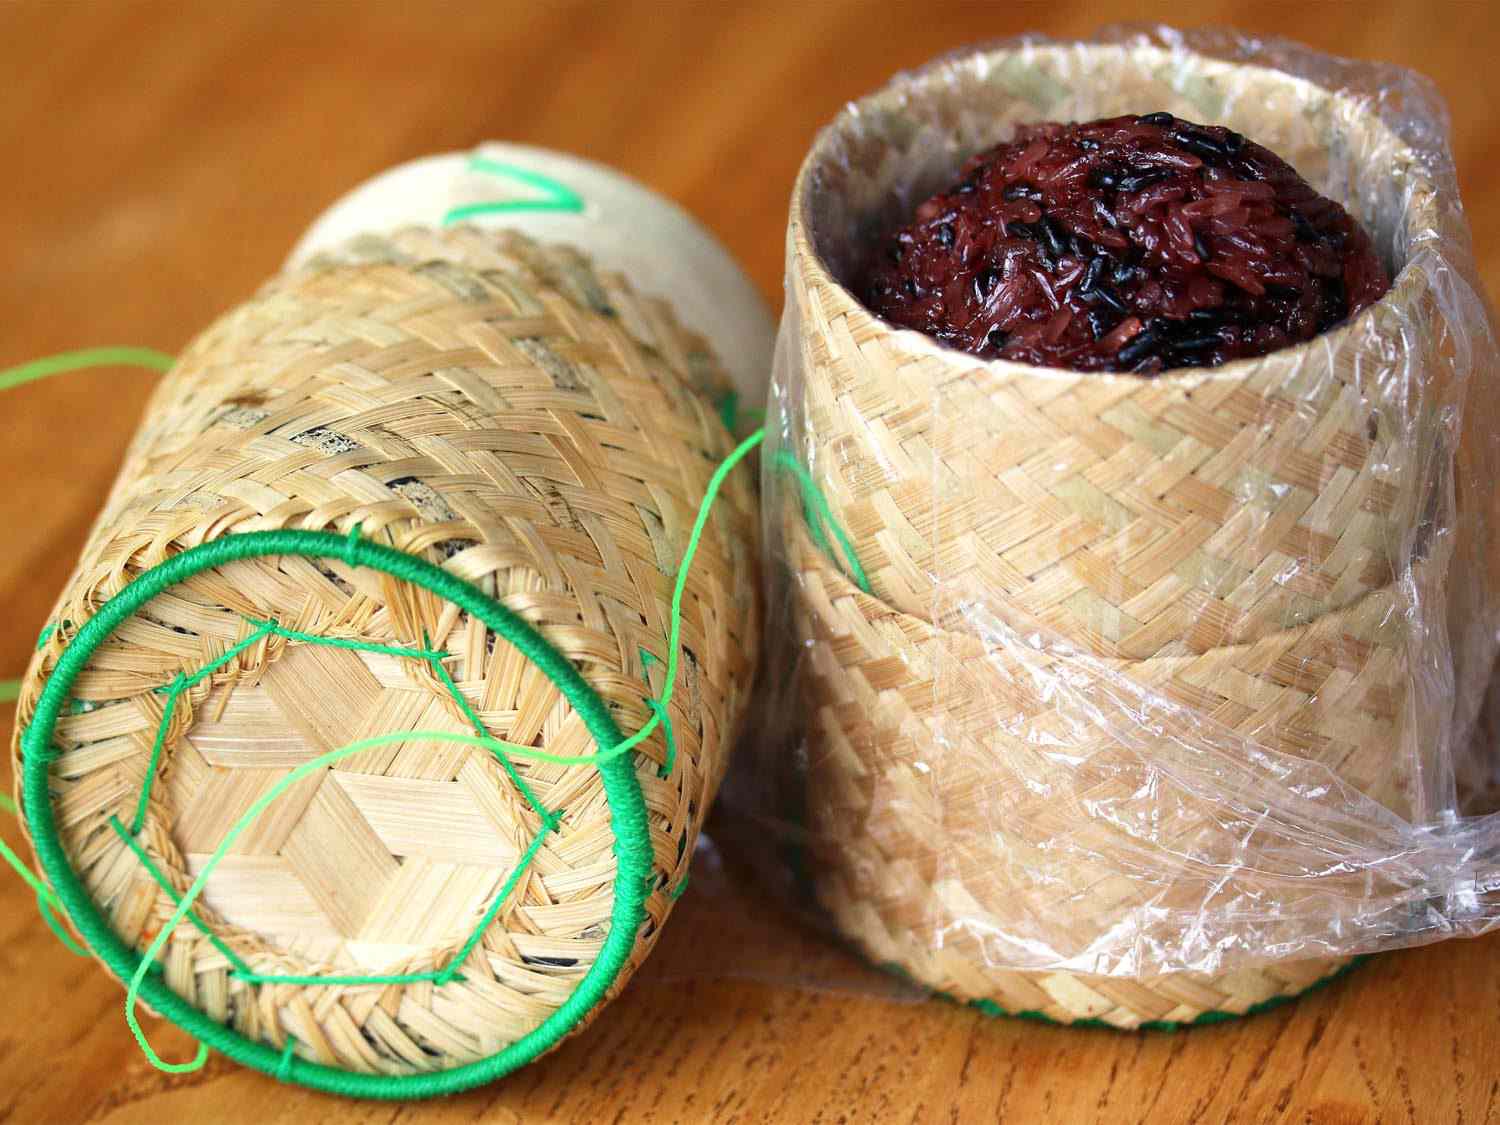 有盖的编织篮(thipkhao)，里面装着一堆深色的糯米粒(khao niew)。